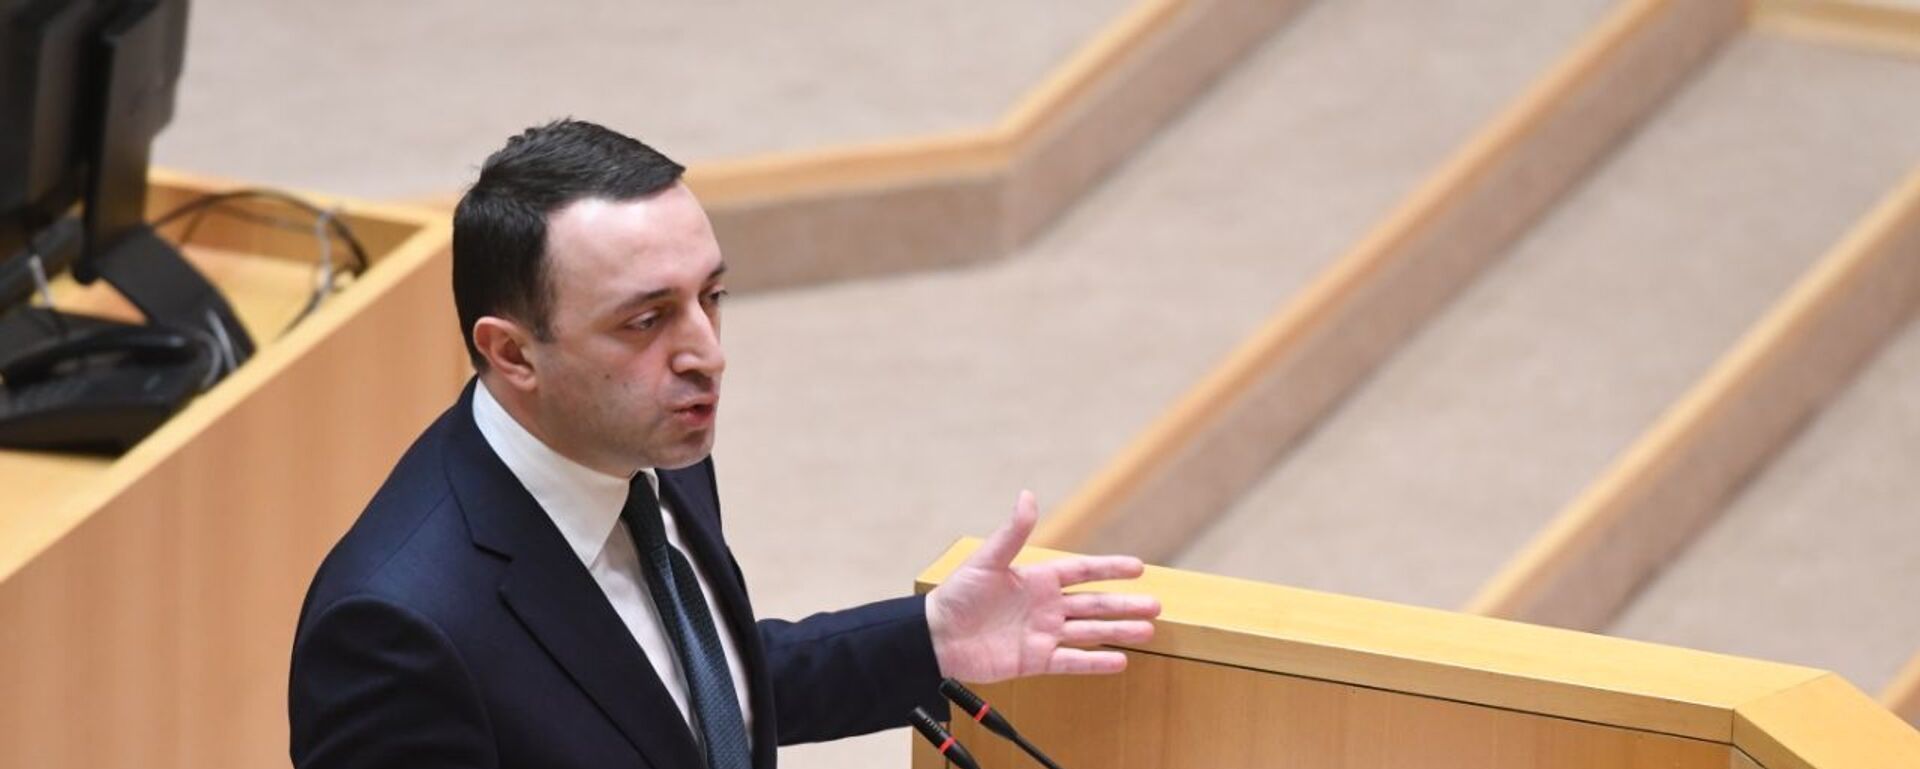 Ираклий Гарибашвили выступает перед парламентом Грузии 22 февраля 2021 года - Sputnik Грузия, 1920, 25.06.2021